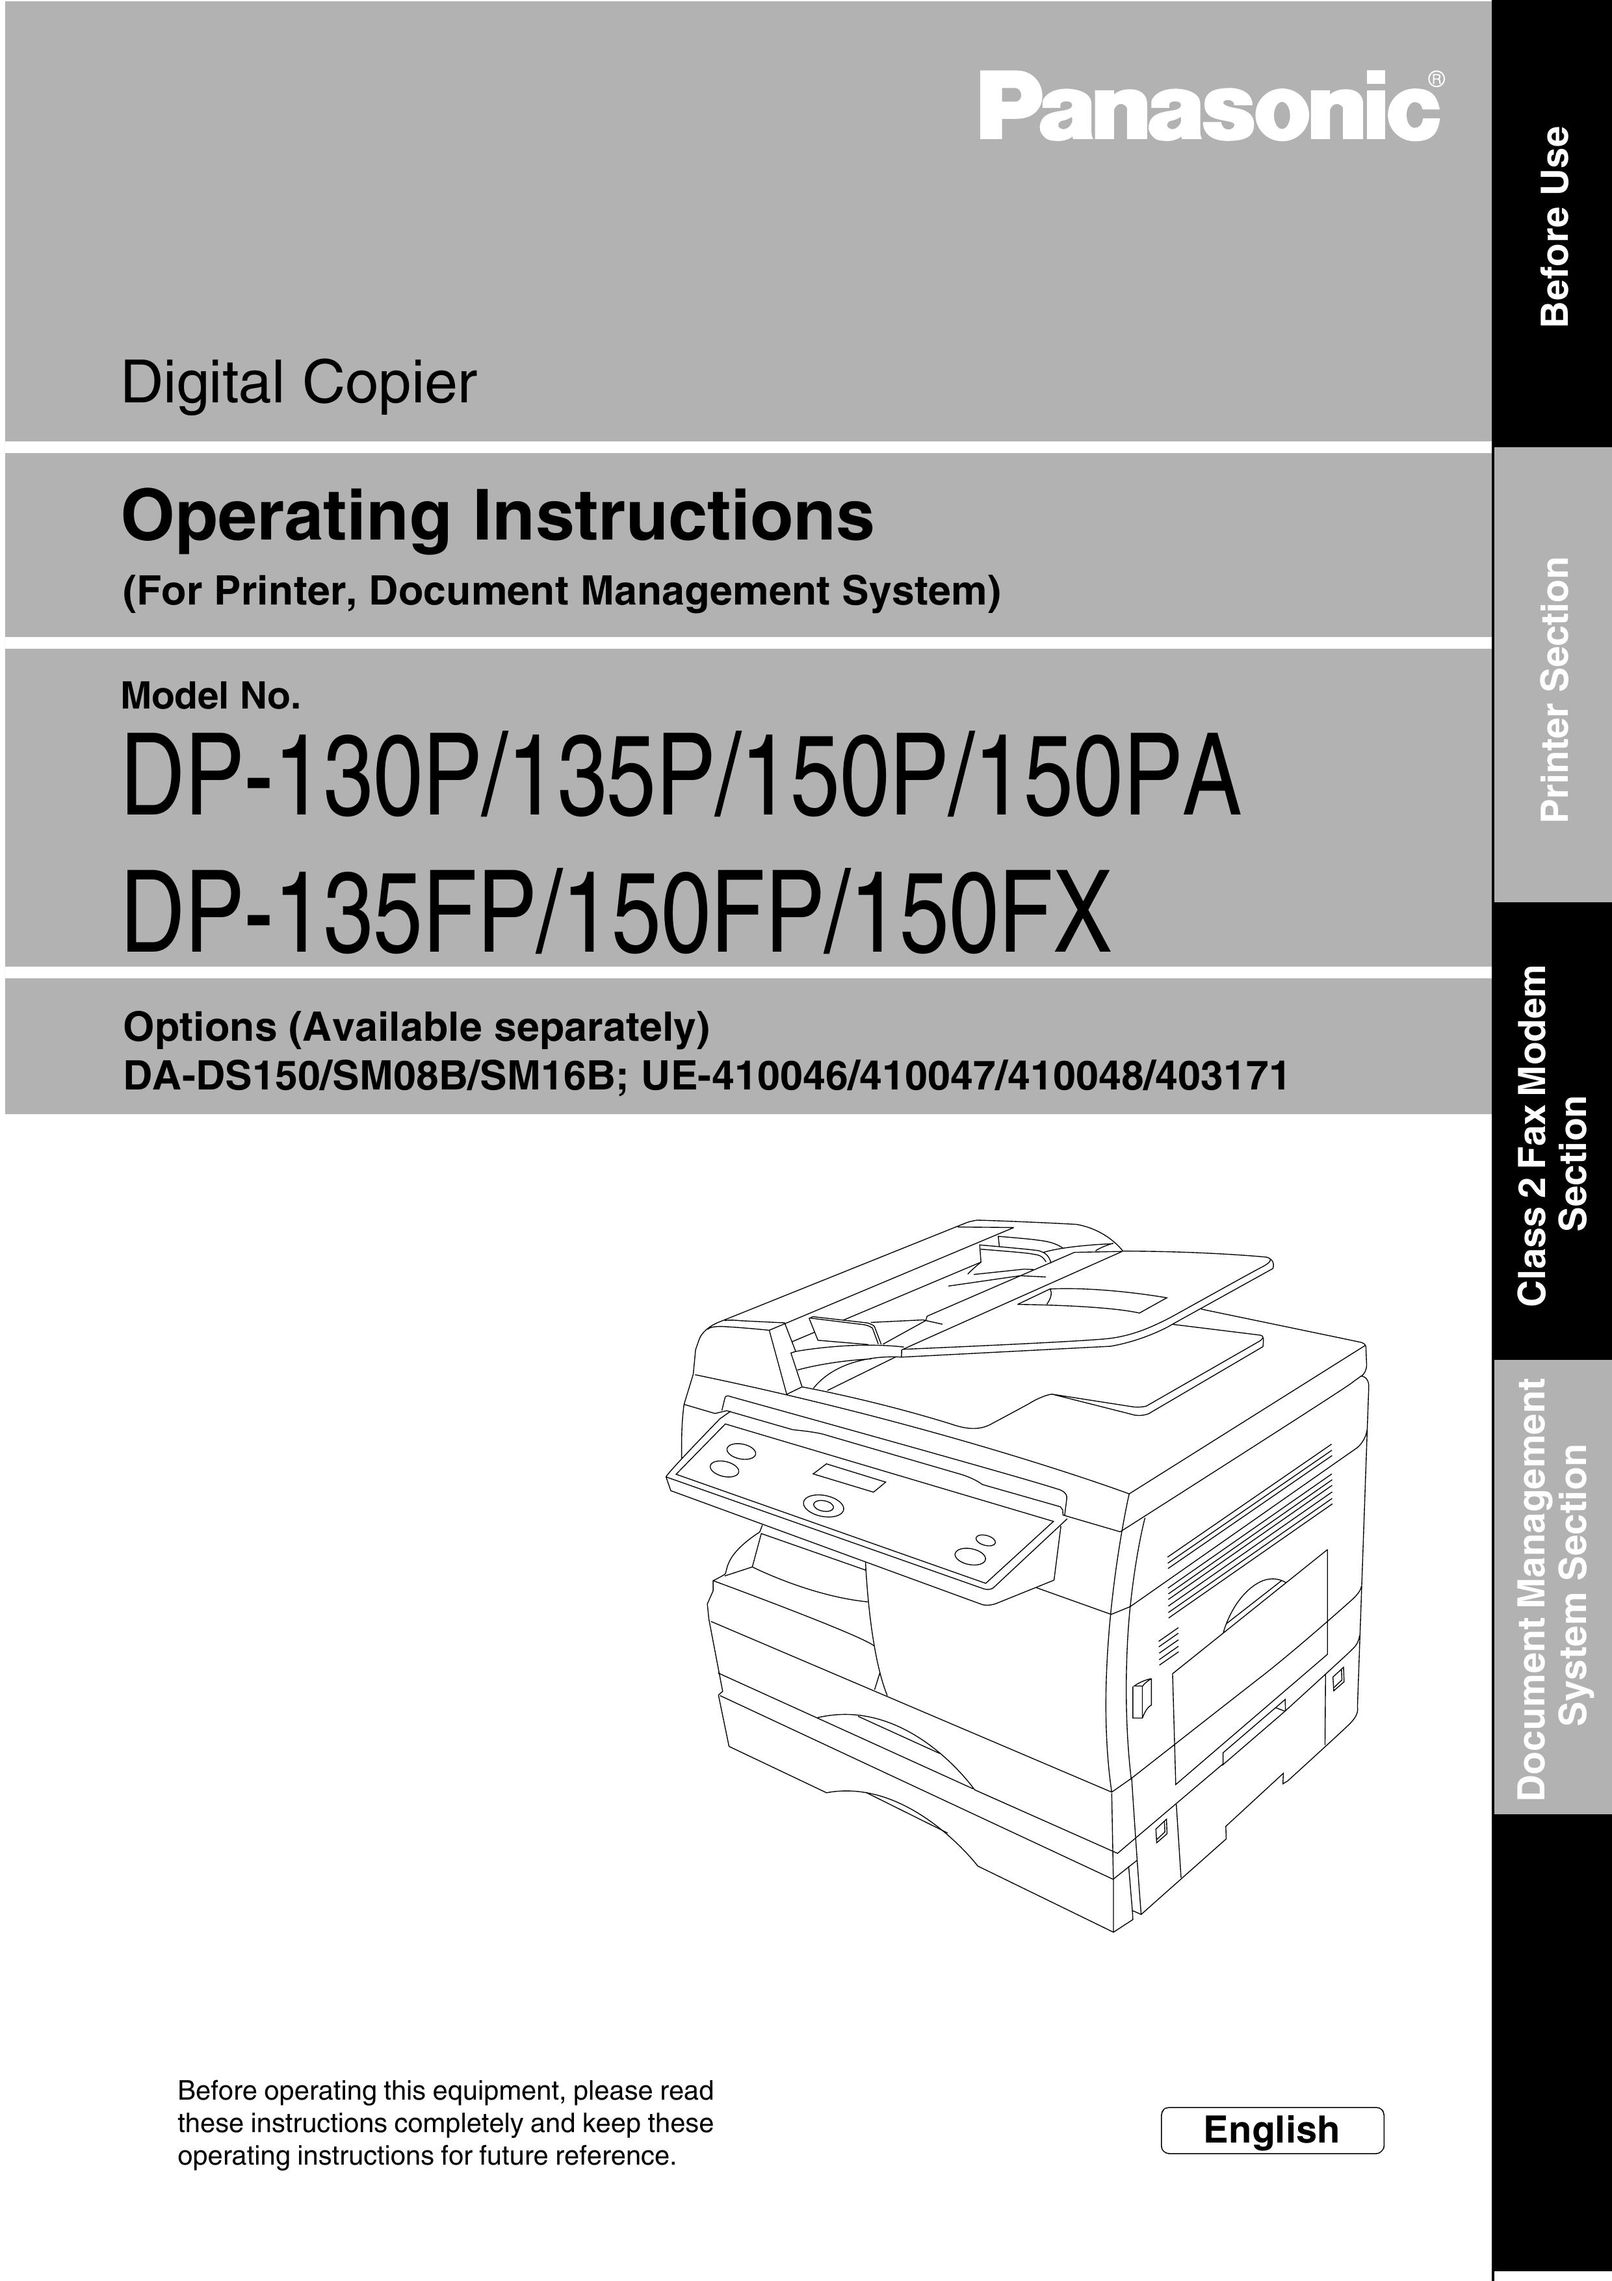 Panasonic 150P All in One Printer User Manual